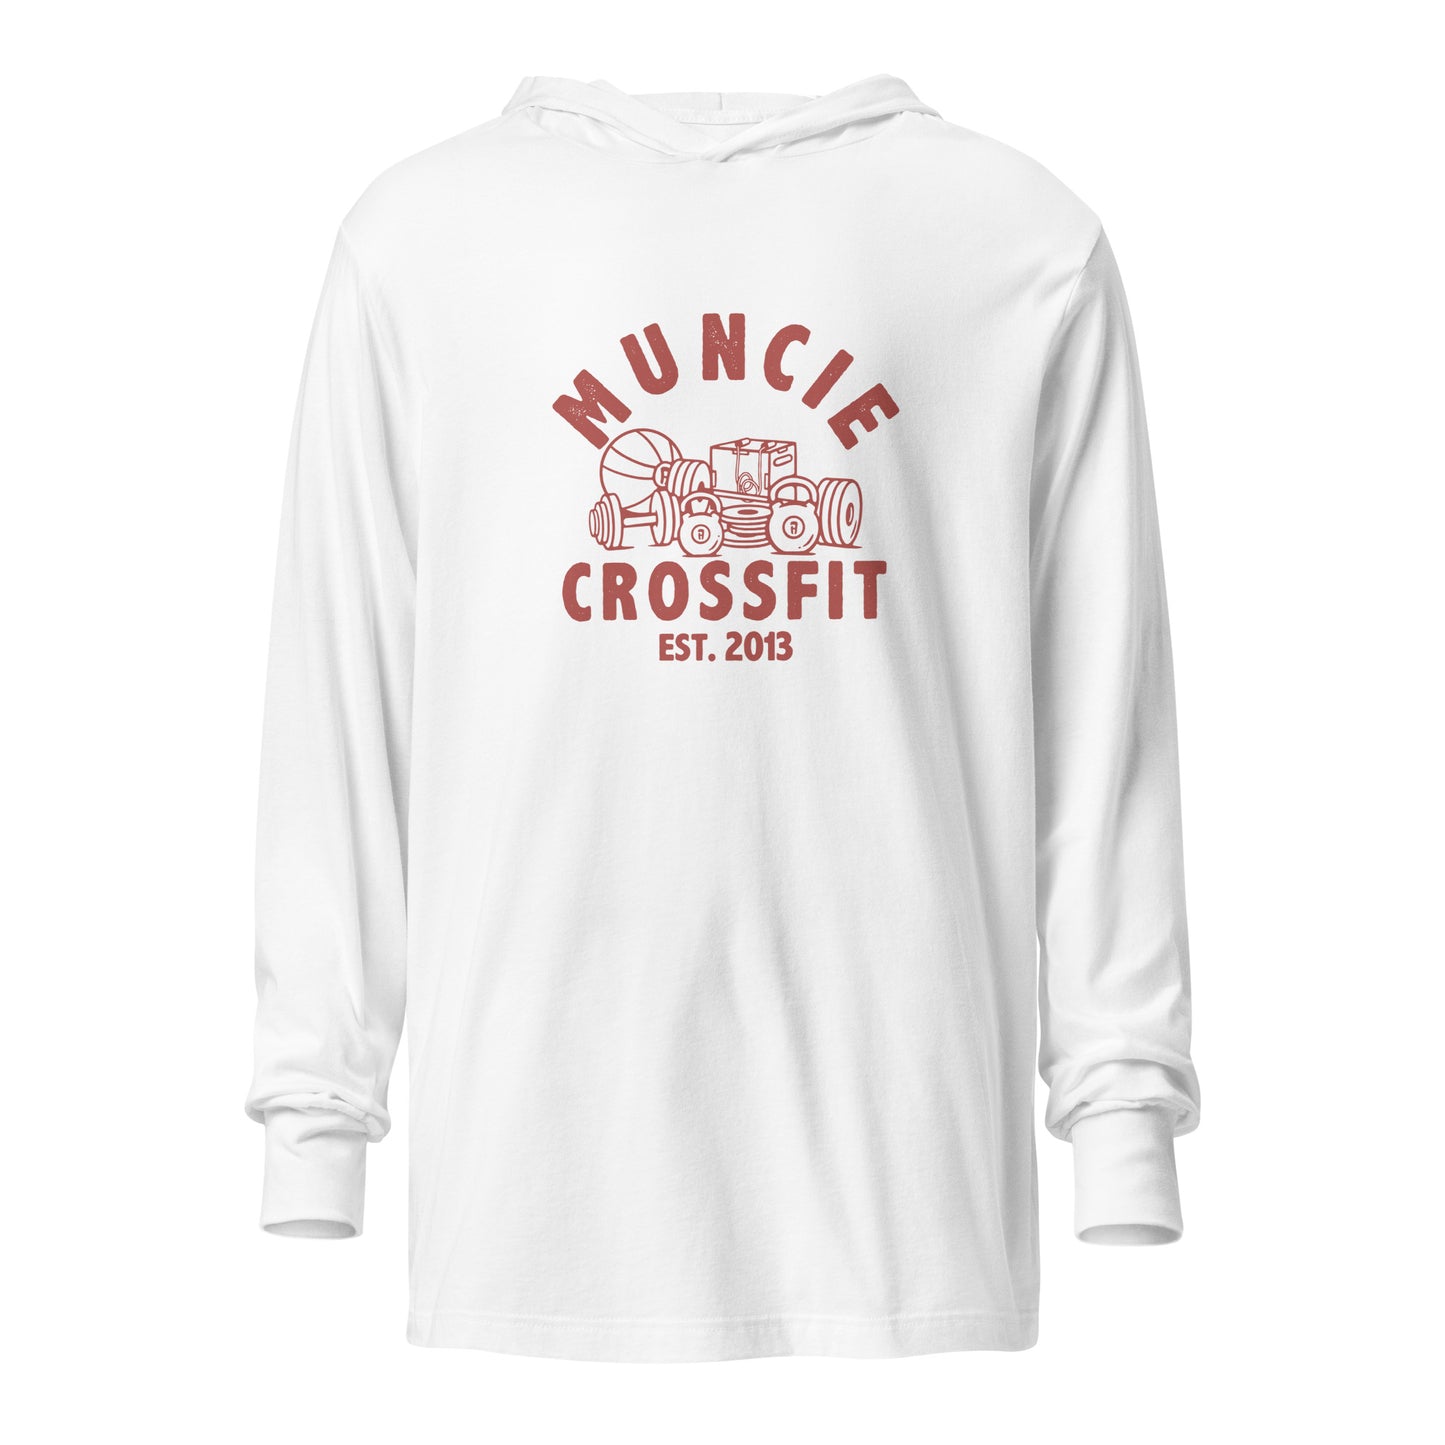 Muncie CrossFit Hooded long-sleeve tee